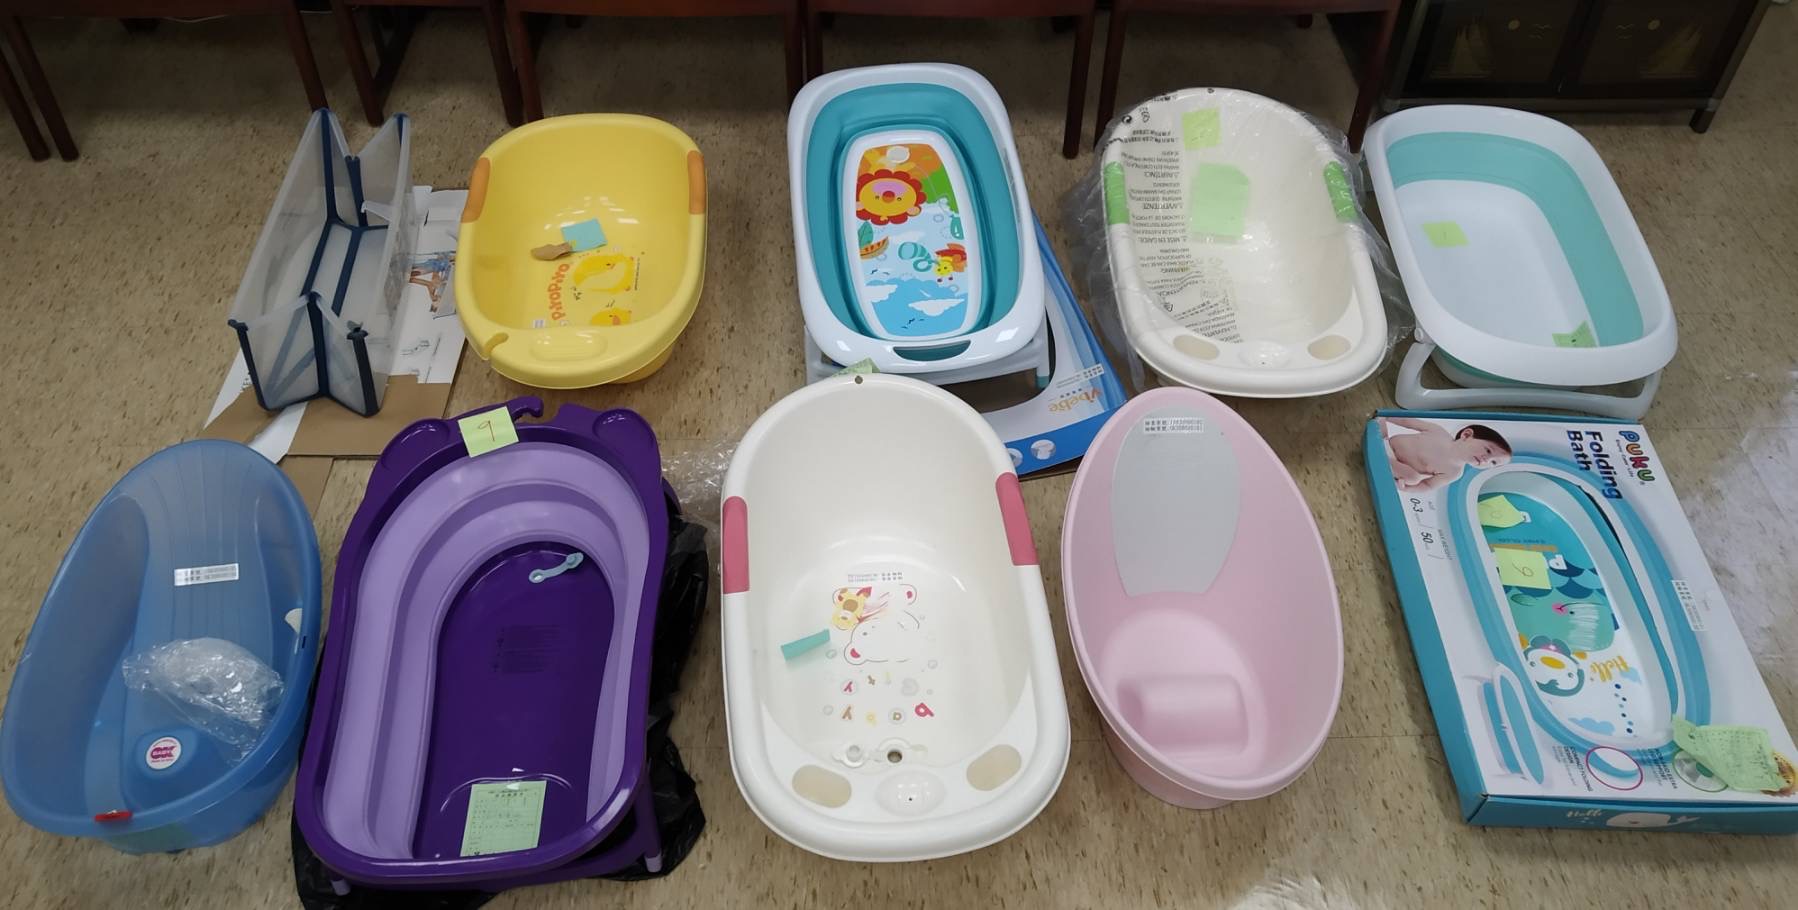 經濟部標準檢驗局與財團法人中華民國消費者文教基金會共同公布市售「嬰兒用浴盆」檢測結果